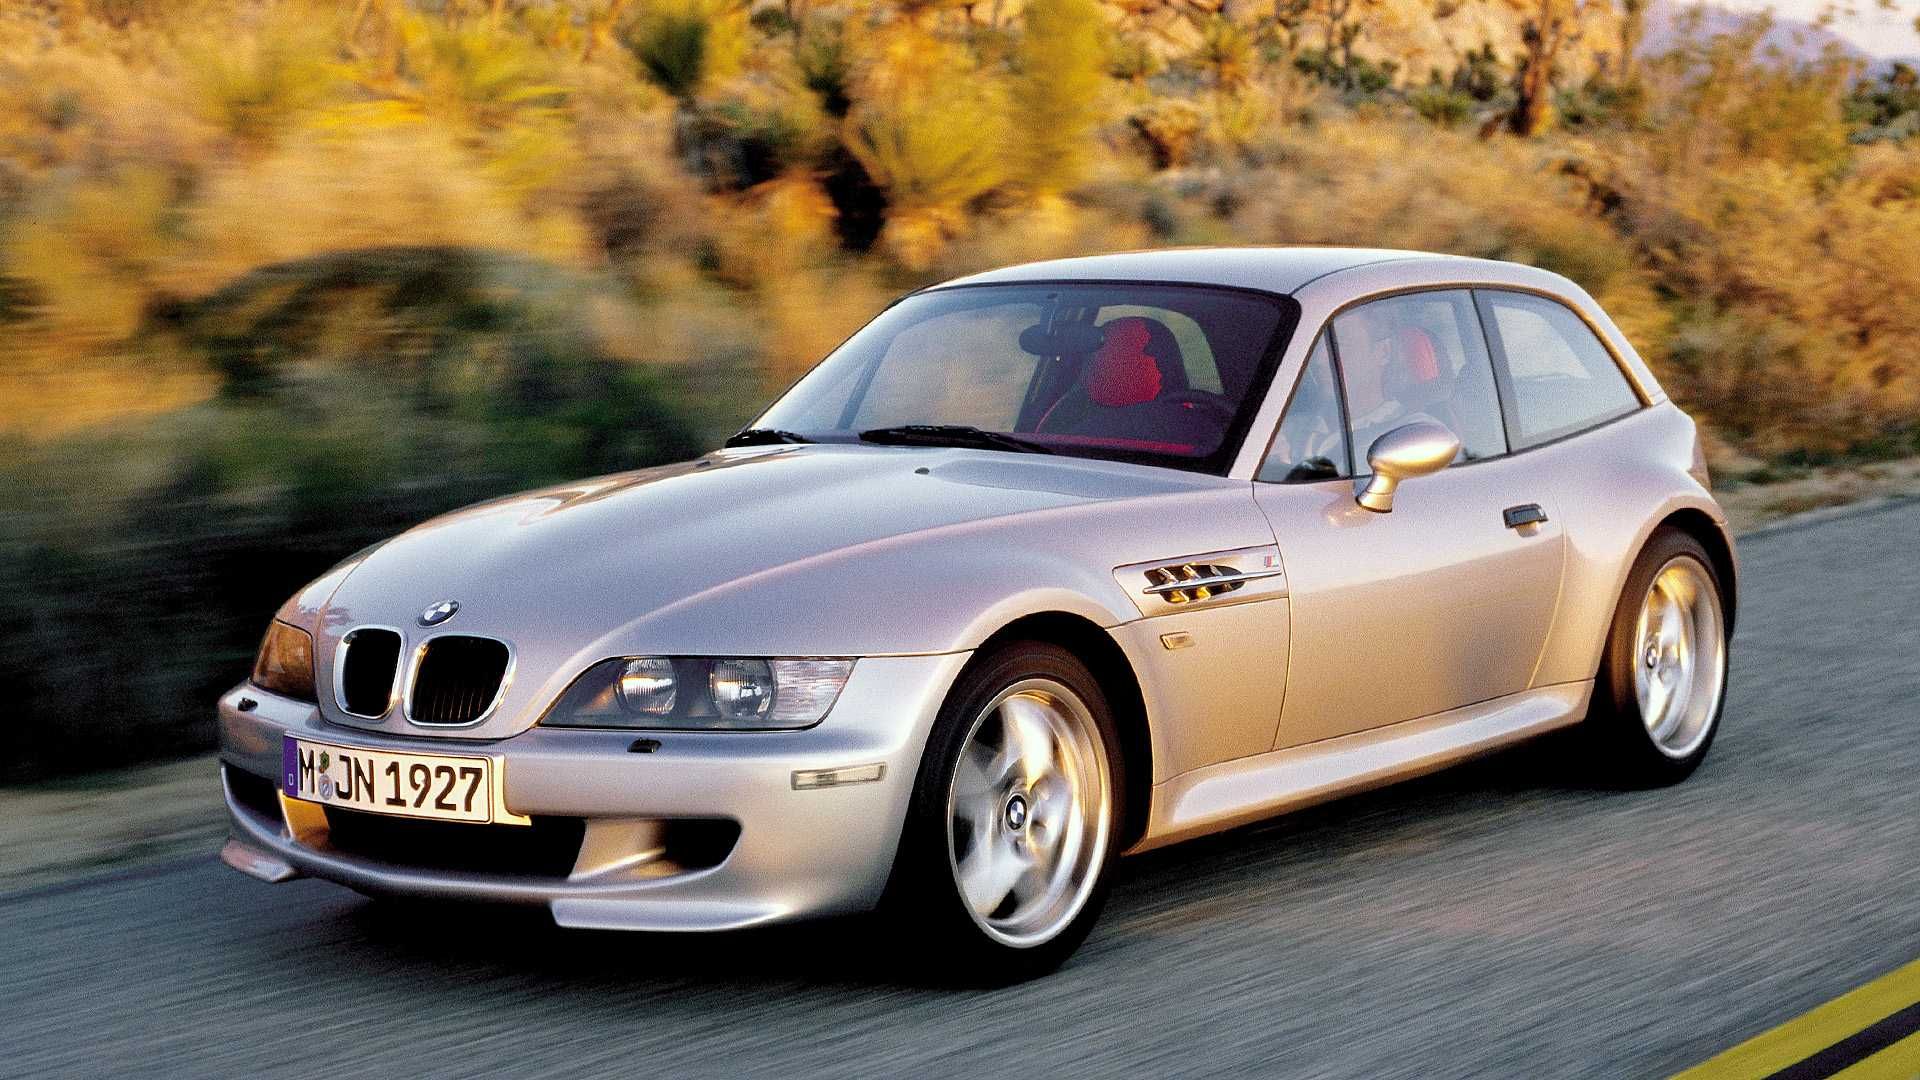 Titanium Silver Metallic BMW Z3 Coupe speeding on a road